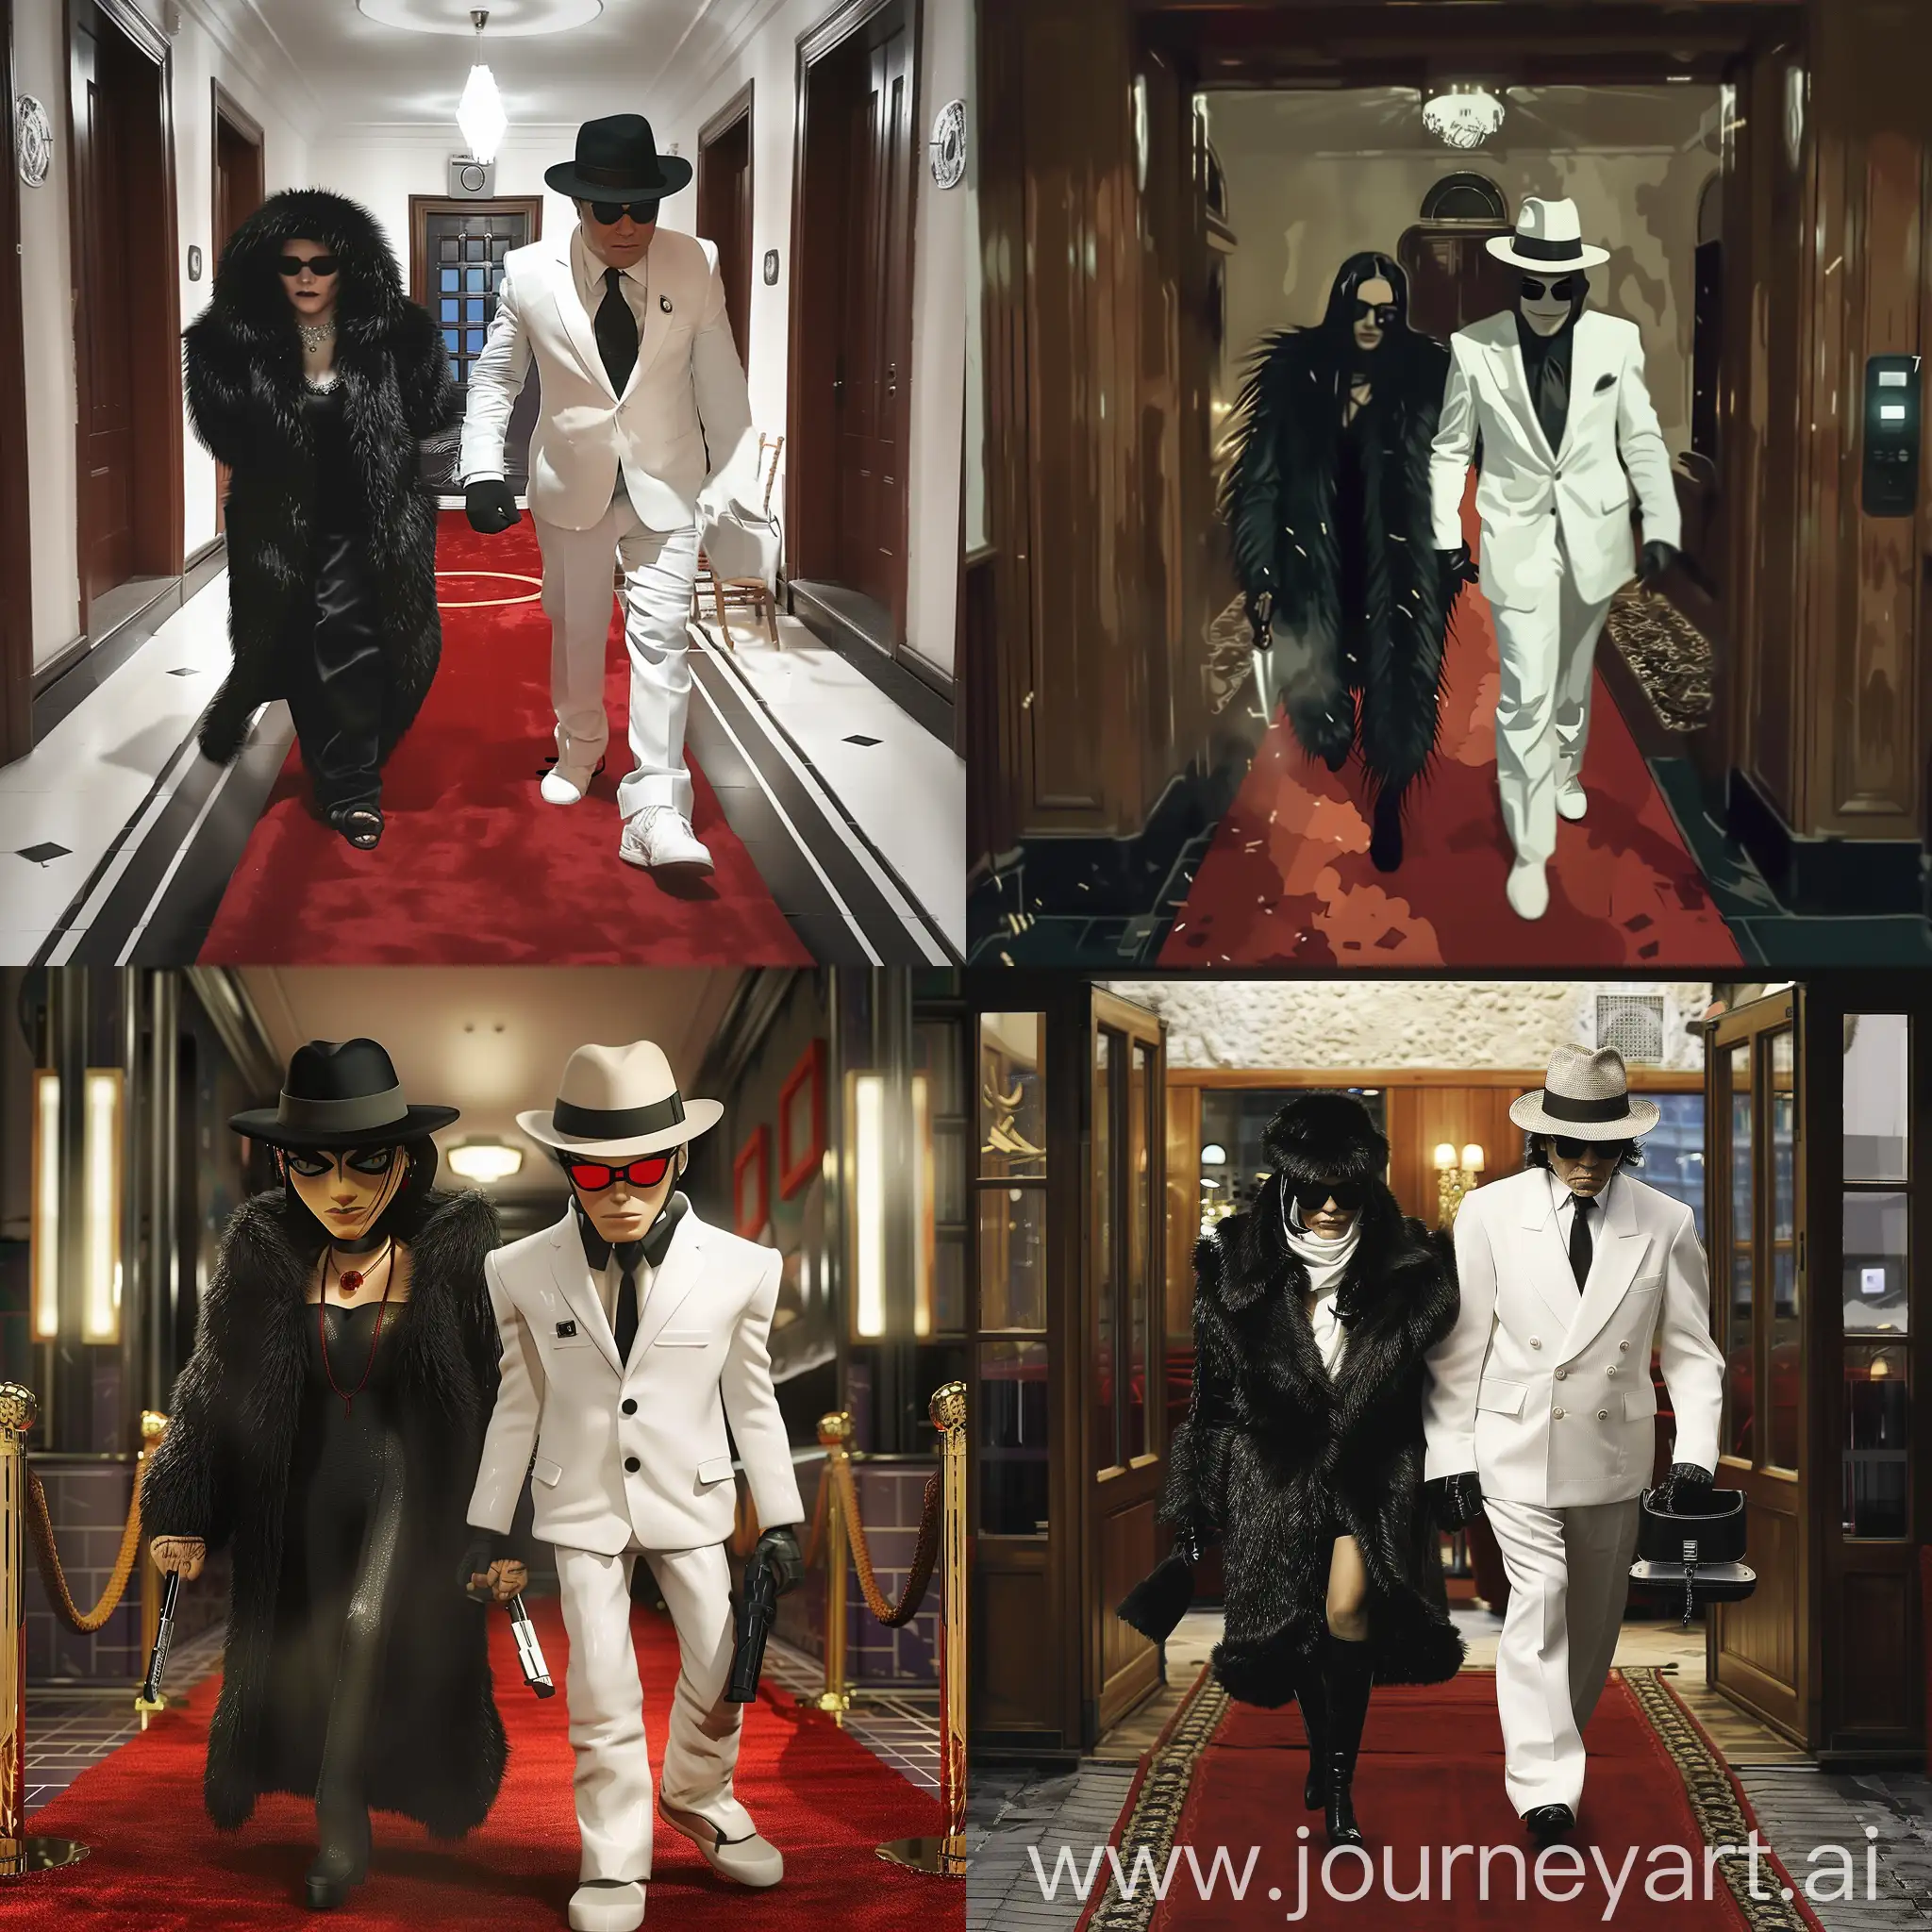 Турецкие Бони и Клайд в костюмах мафии идут в клуб по красной дорожке. Бони в черной шубе, Клайд в белом костюме и шляпе федоре, стиль Gorillaz